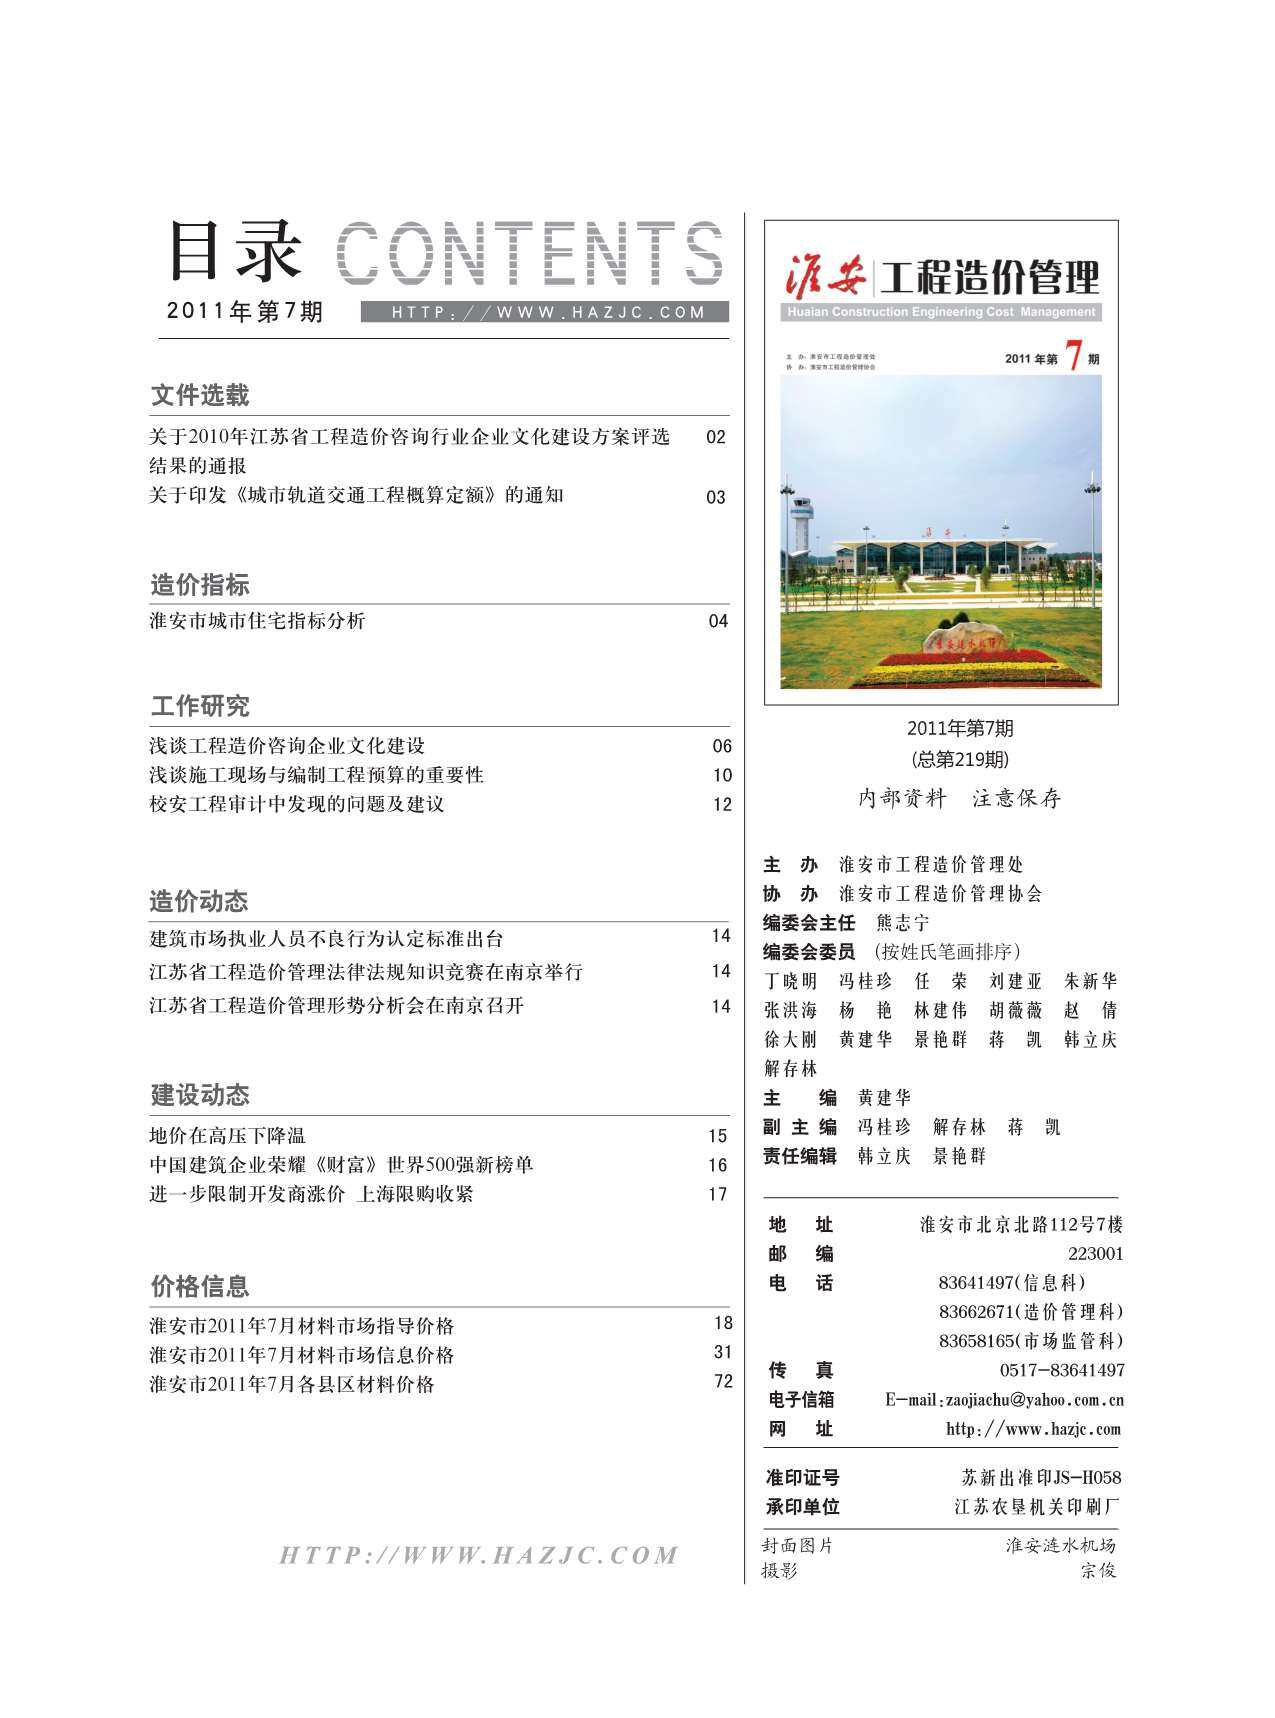 淮安市2011年7月工程造价信息期刊